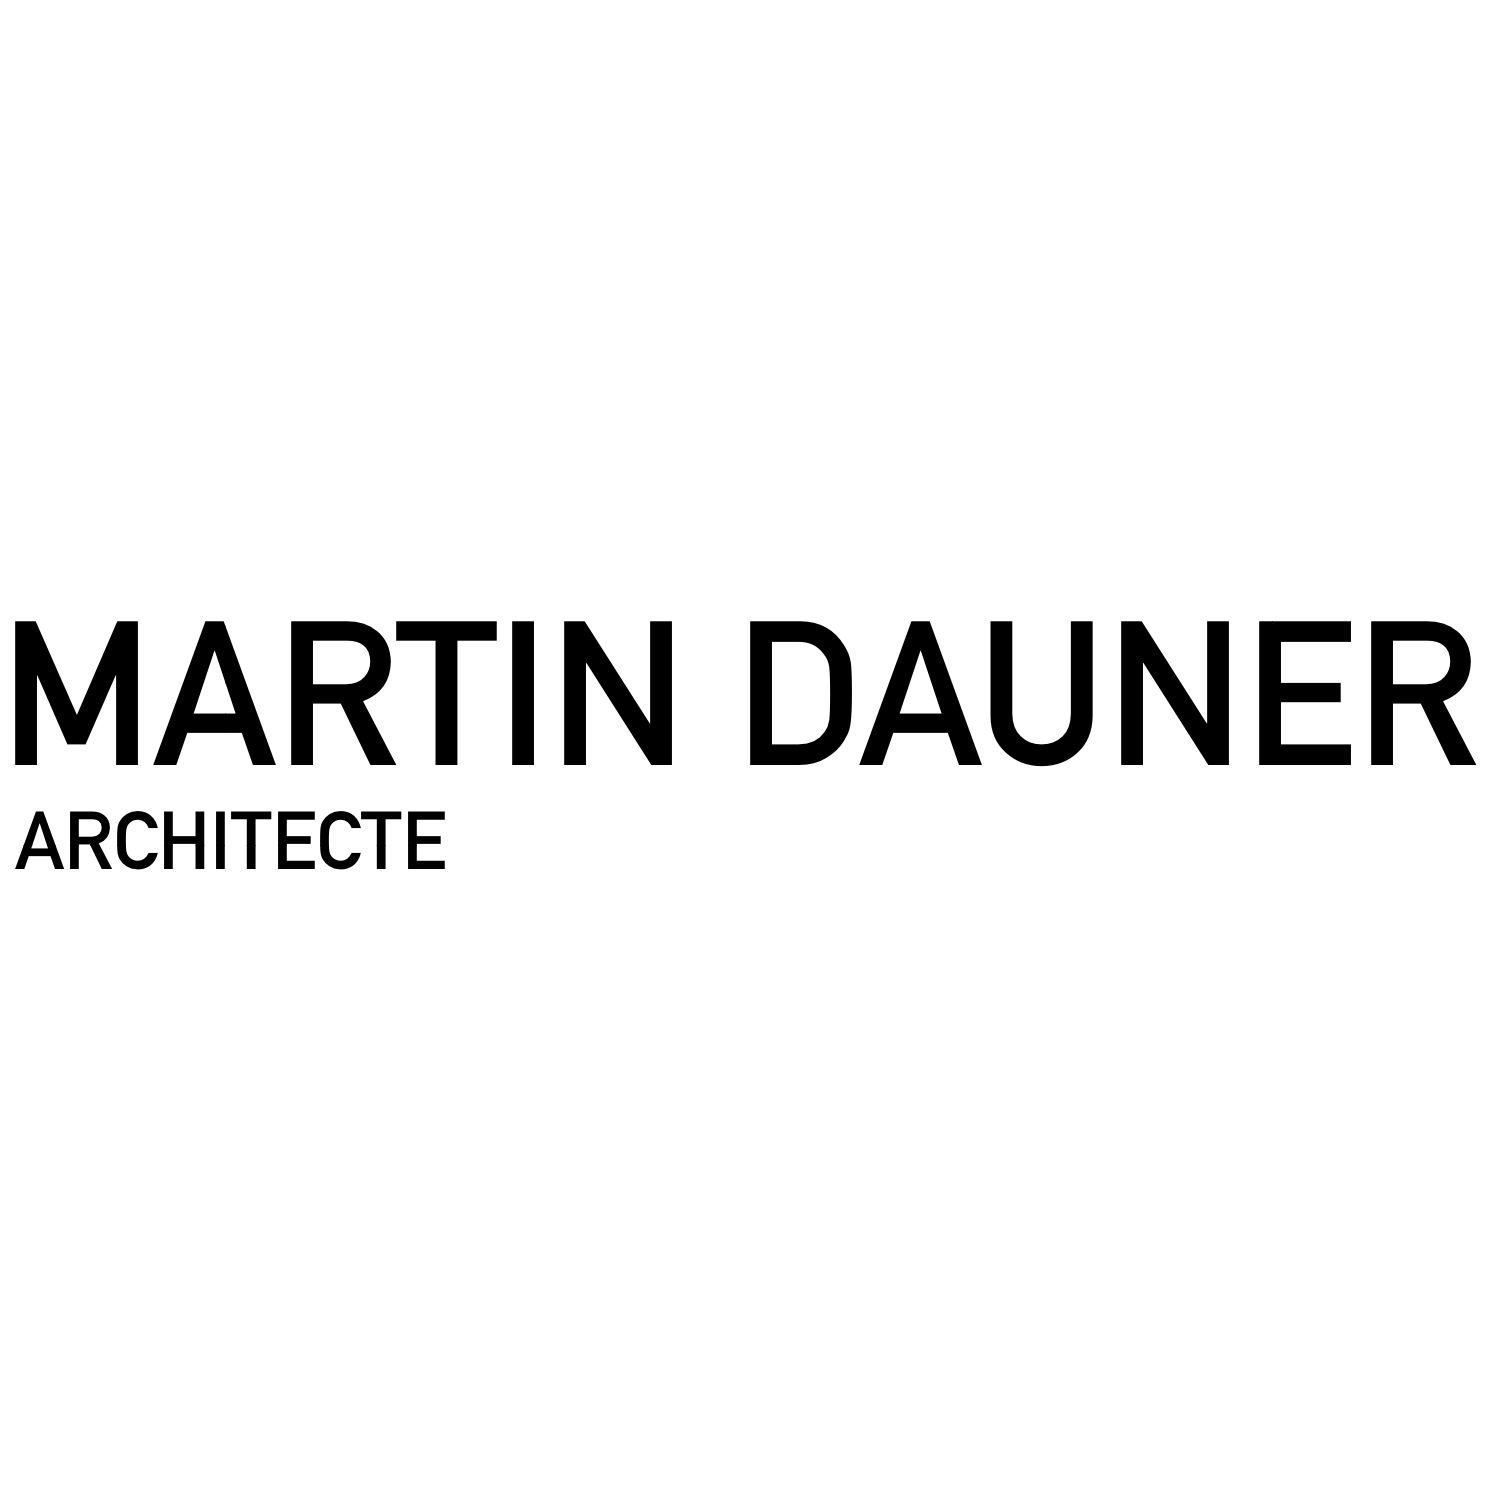 Martin Dauner Architecte